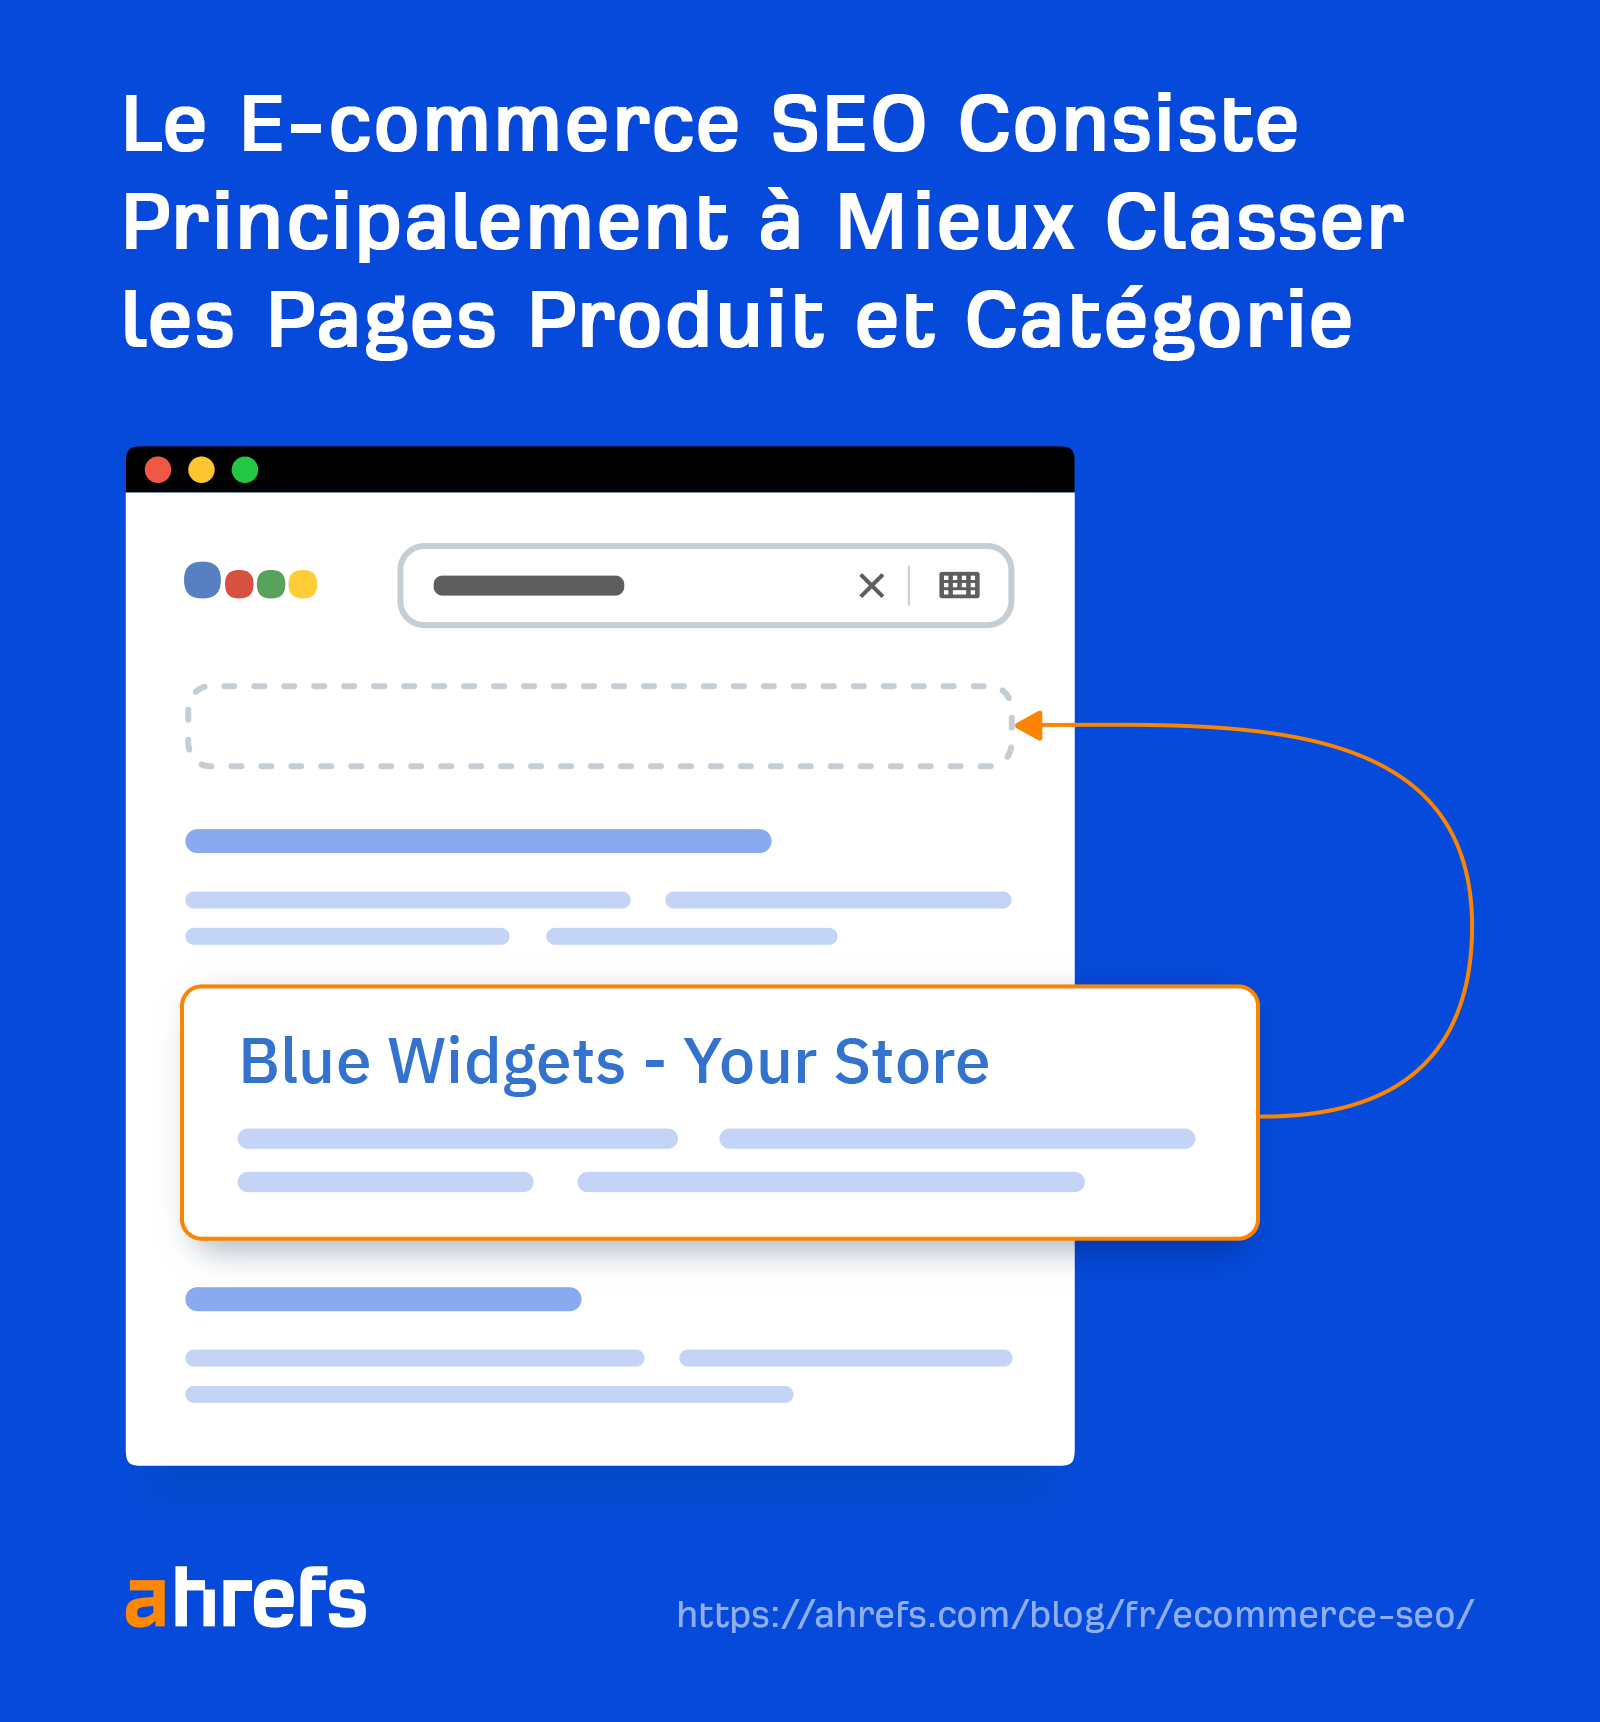 Le E-commerce SEO consiste principalement à mieux classer les pages produit et catégorie.